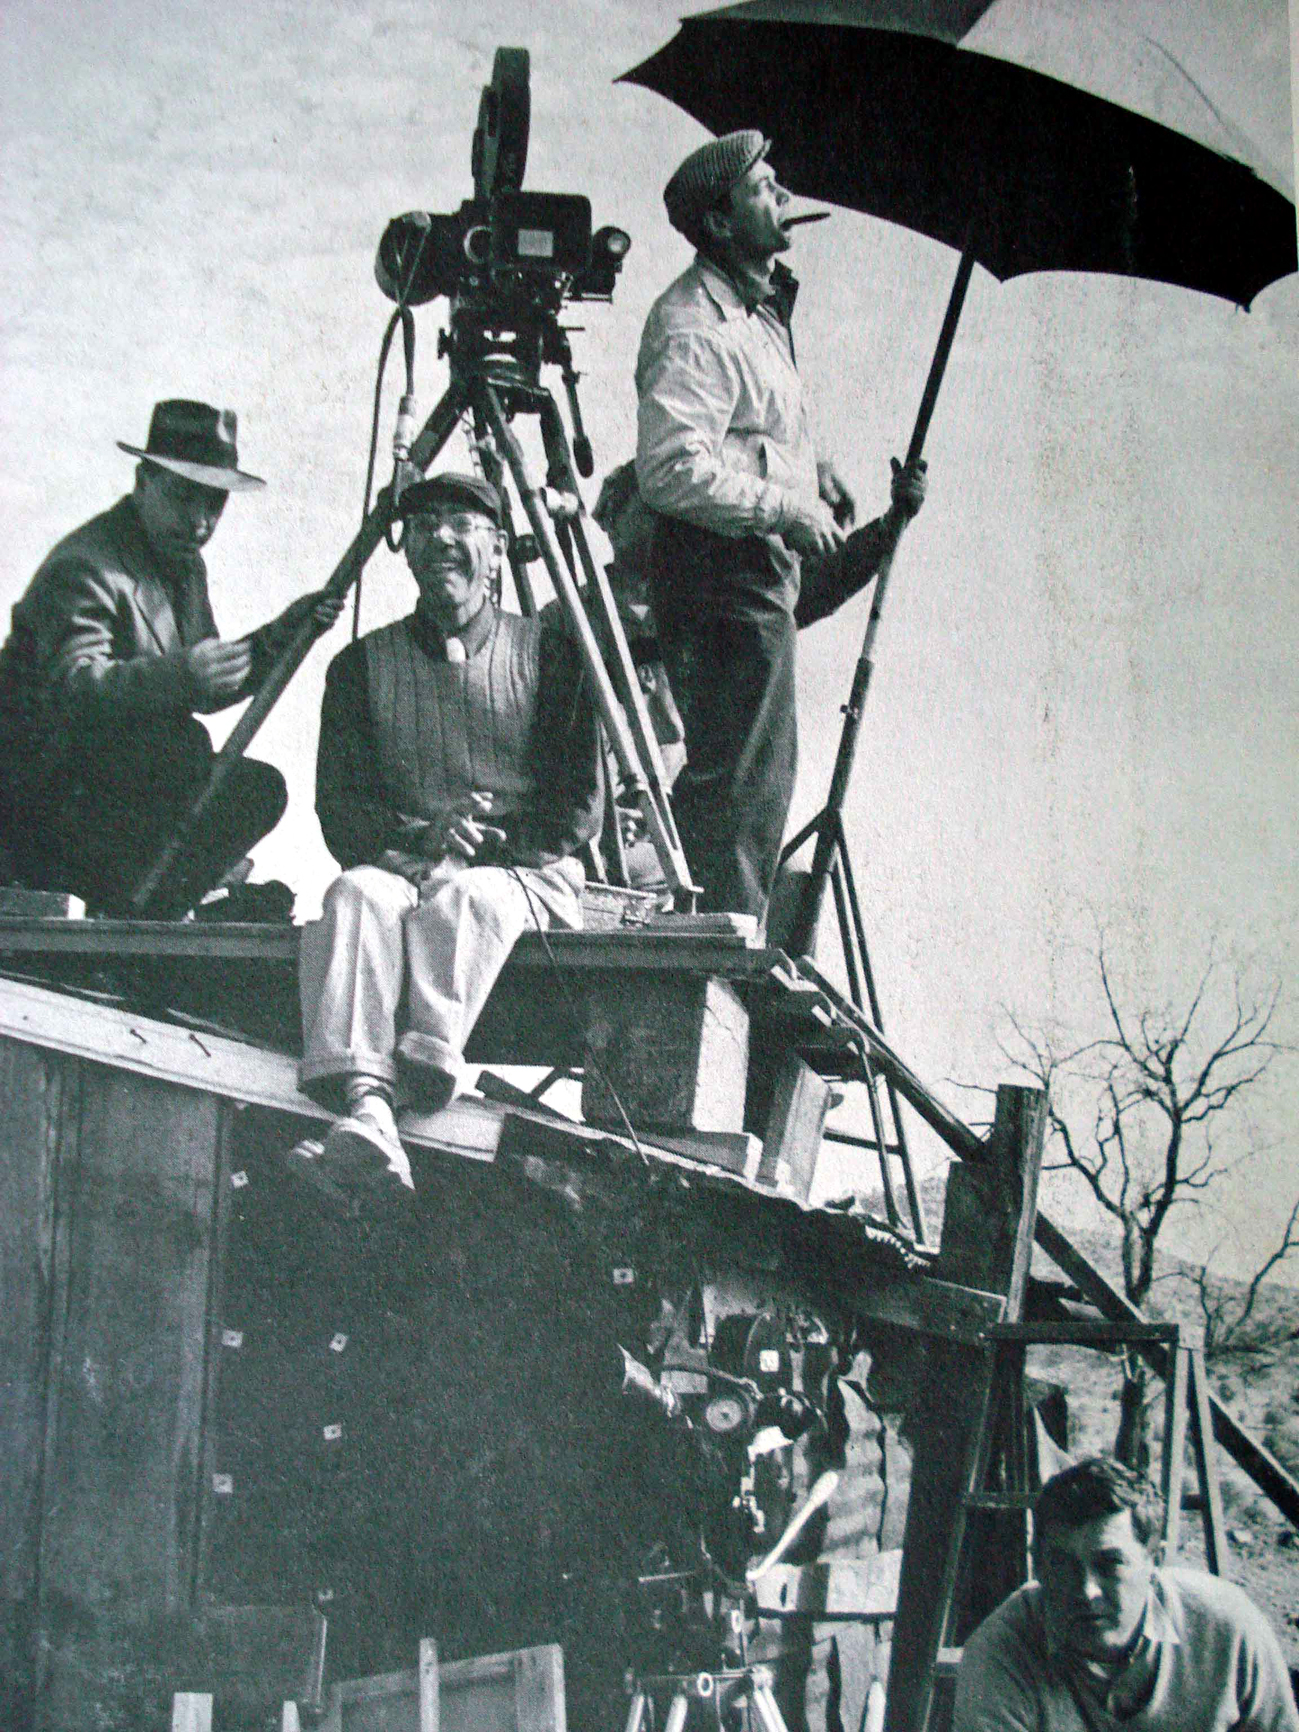 Herbert Biberman dirigiendo el rodaje de “Sal de la tierra” (1954).